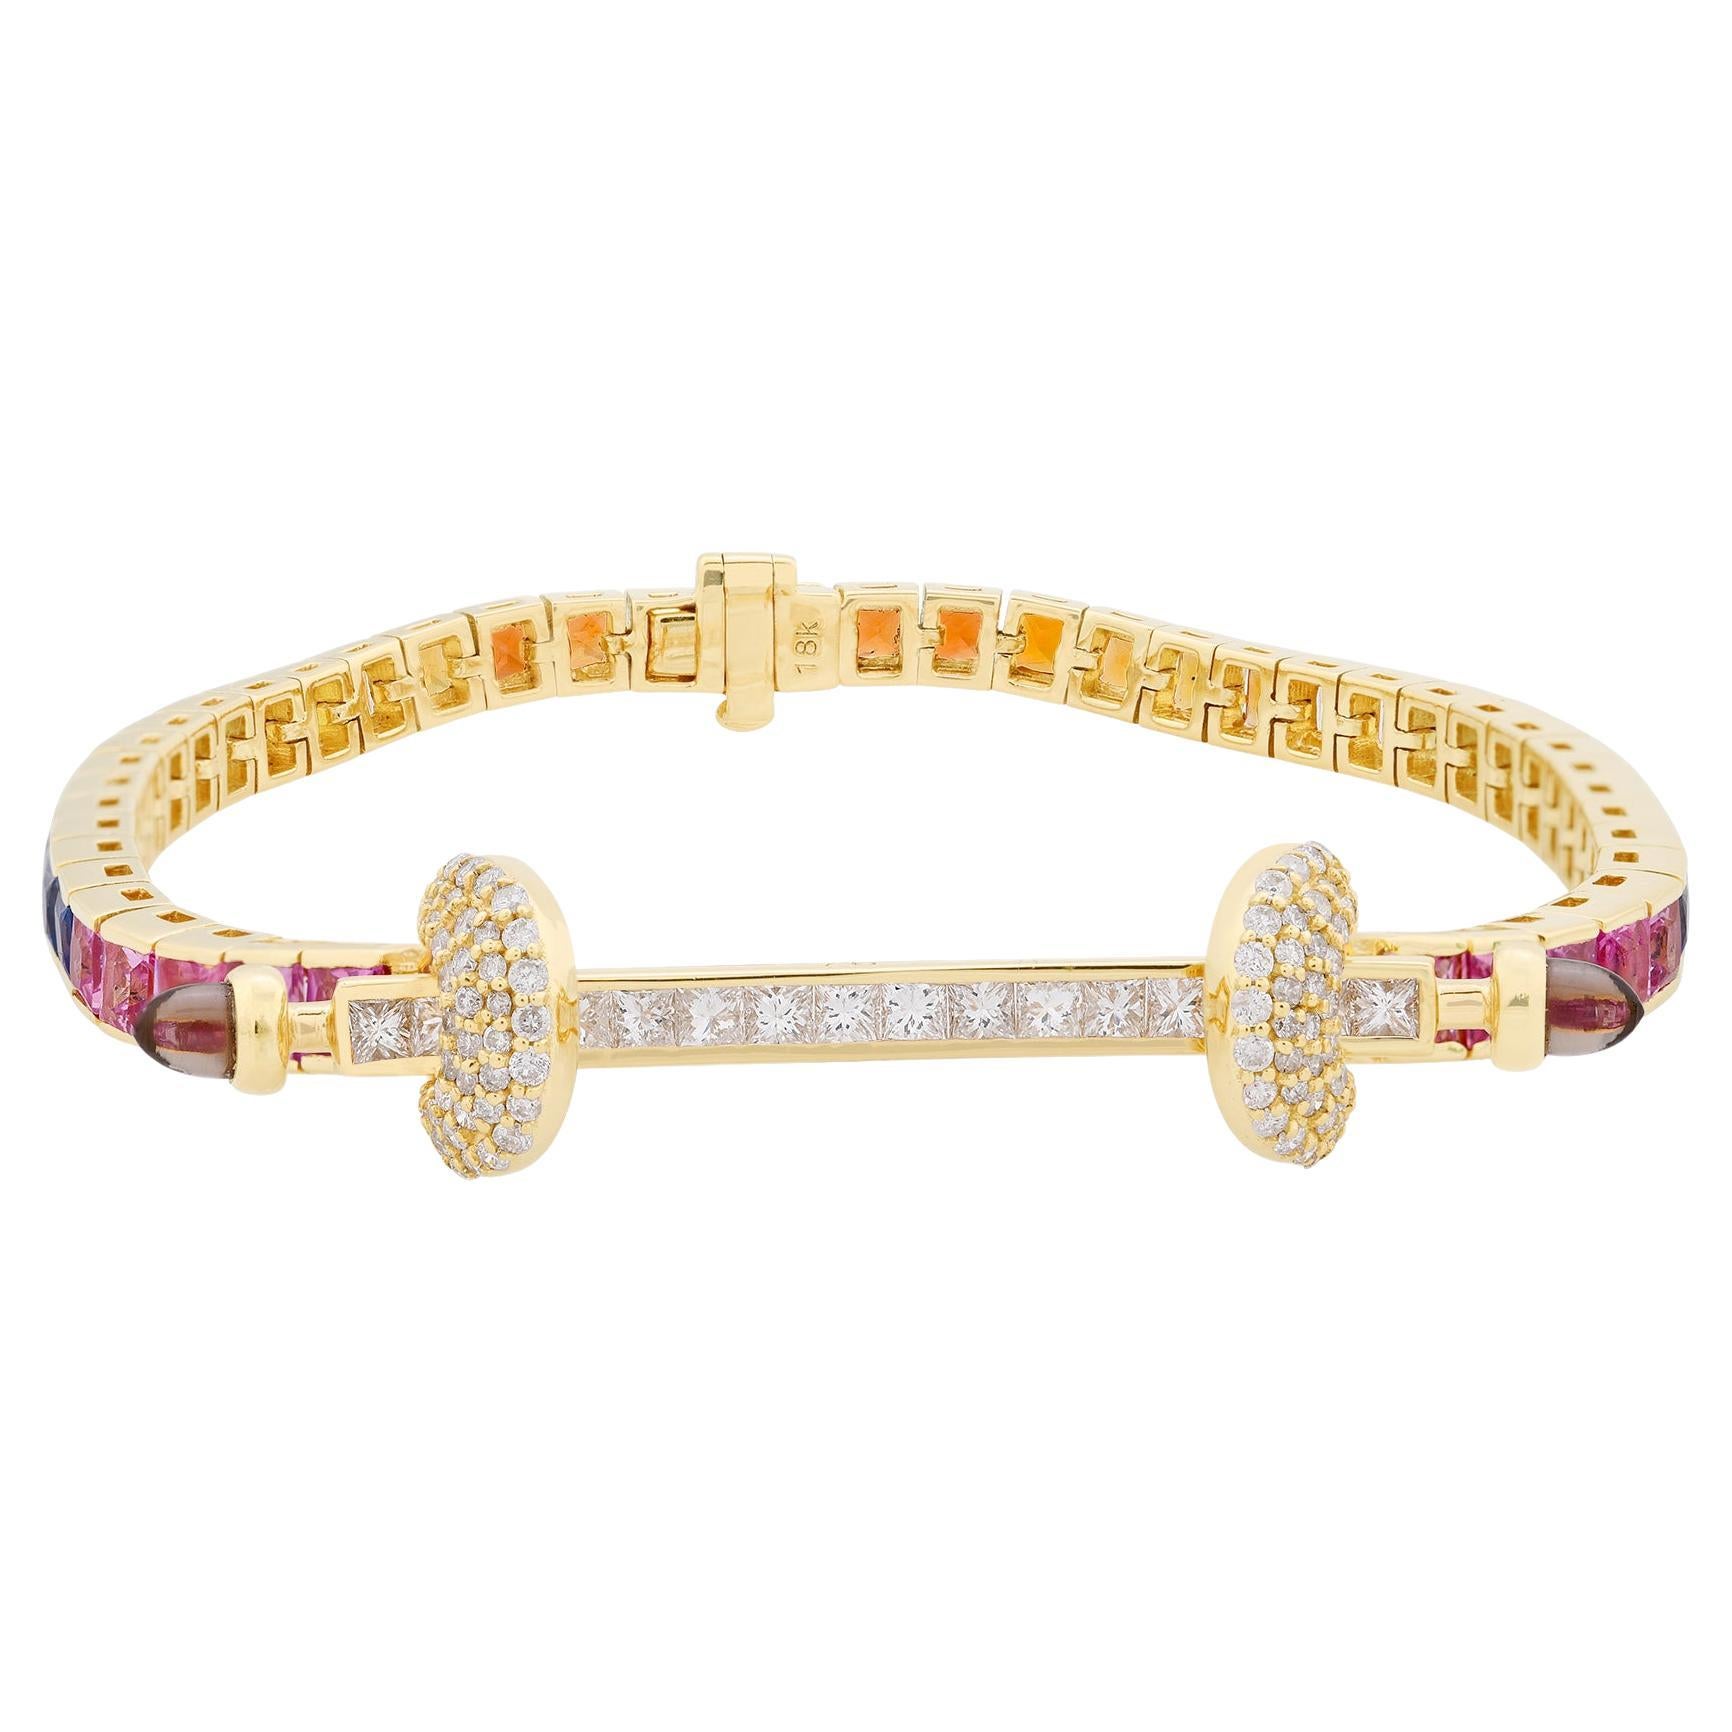 Bracelet artisanal en or jaune 18 carats avec plusieurs saphirs et pierres précieuses, diamants